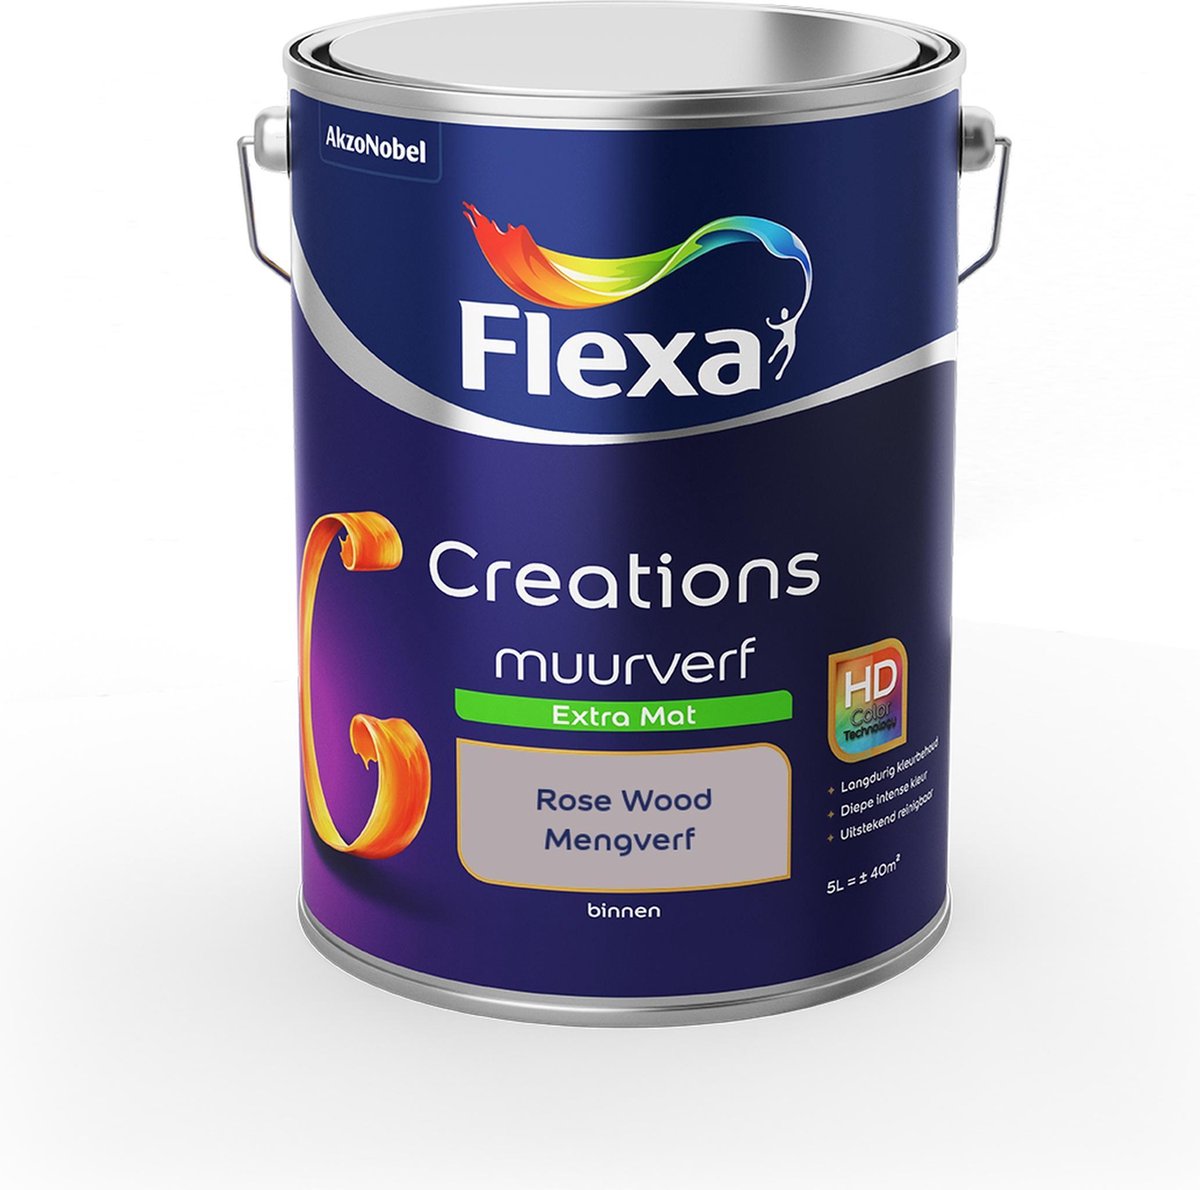 Flexa Creations - Muurverf Extra Mat - Rose Wood - Mengkleuren Collectie - 5 Liter